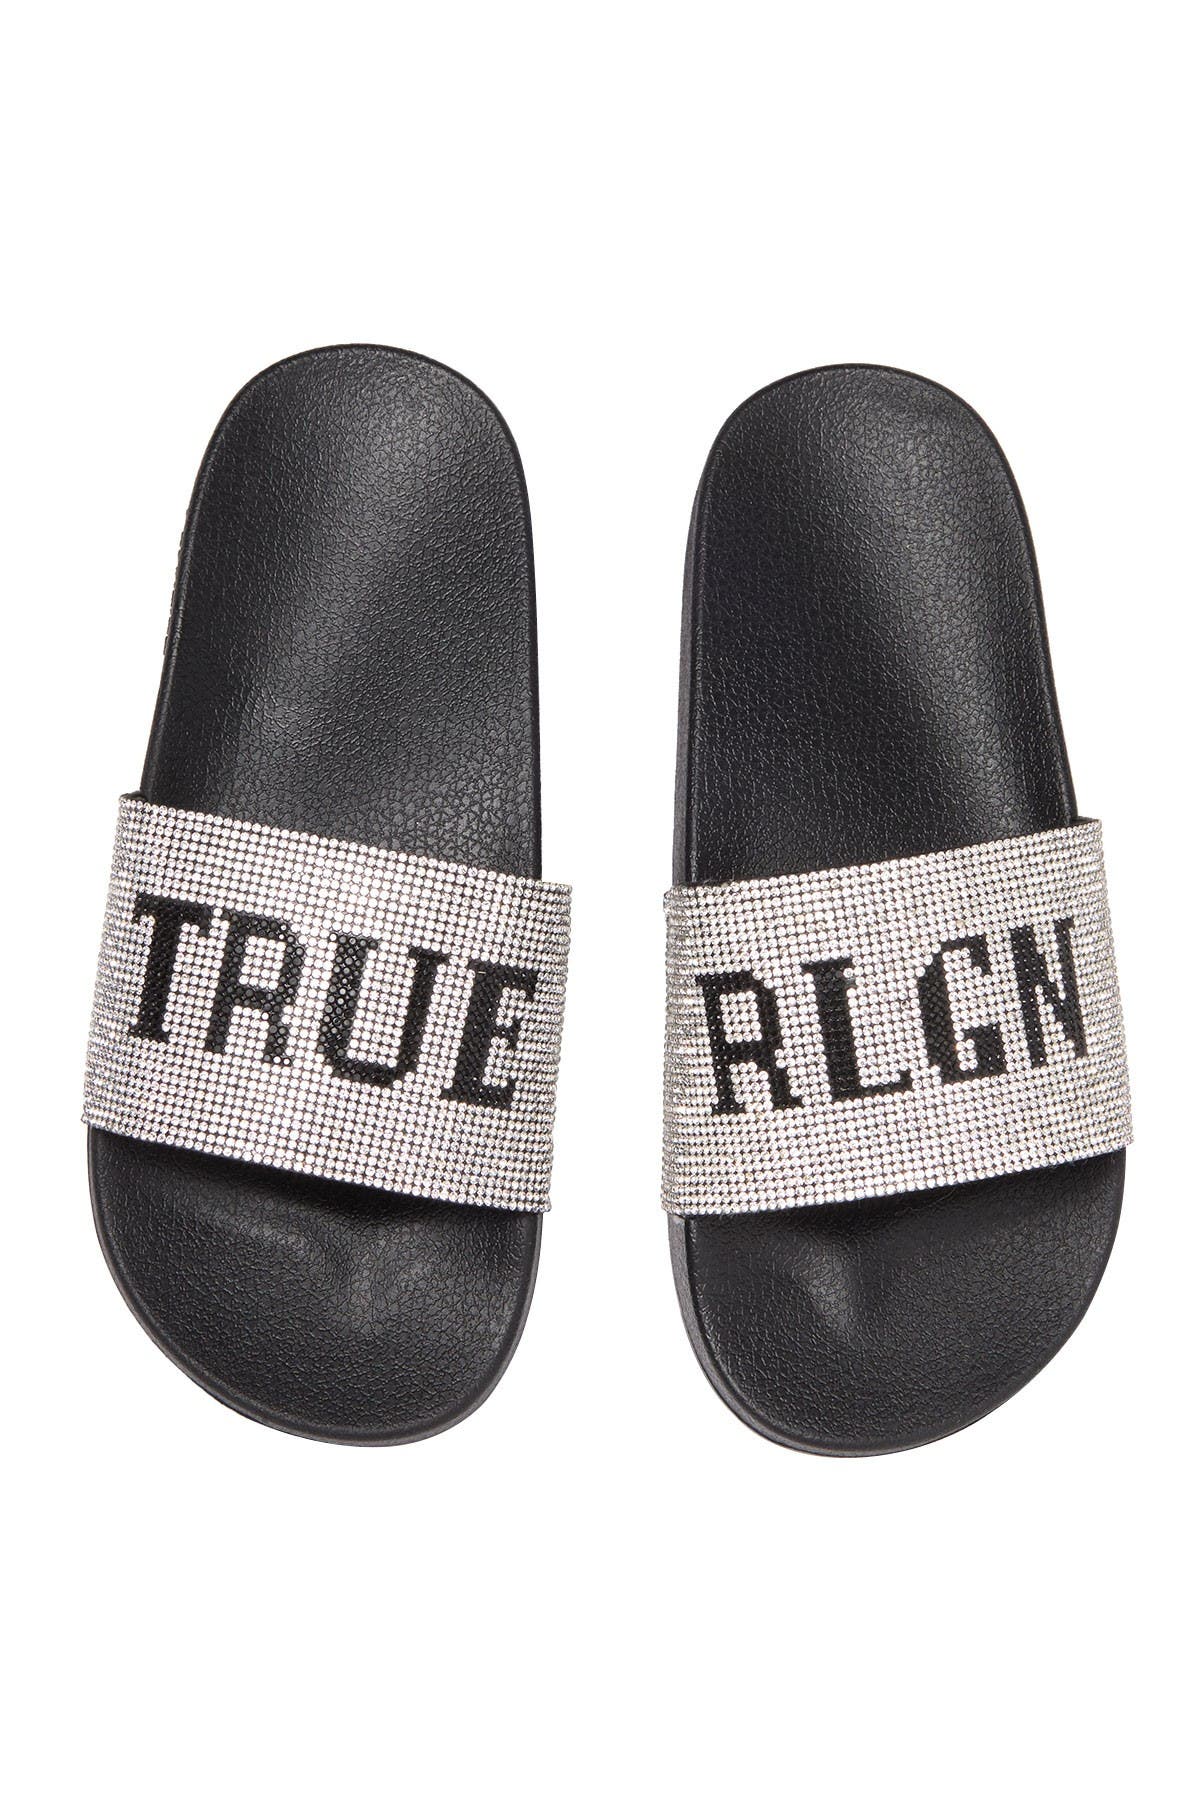 True Religion | Meyer Pool Slide Sandal 